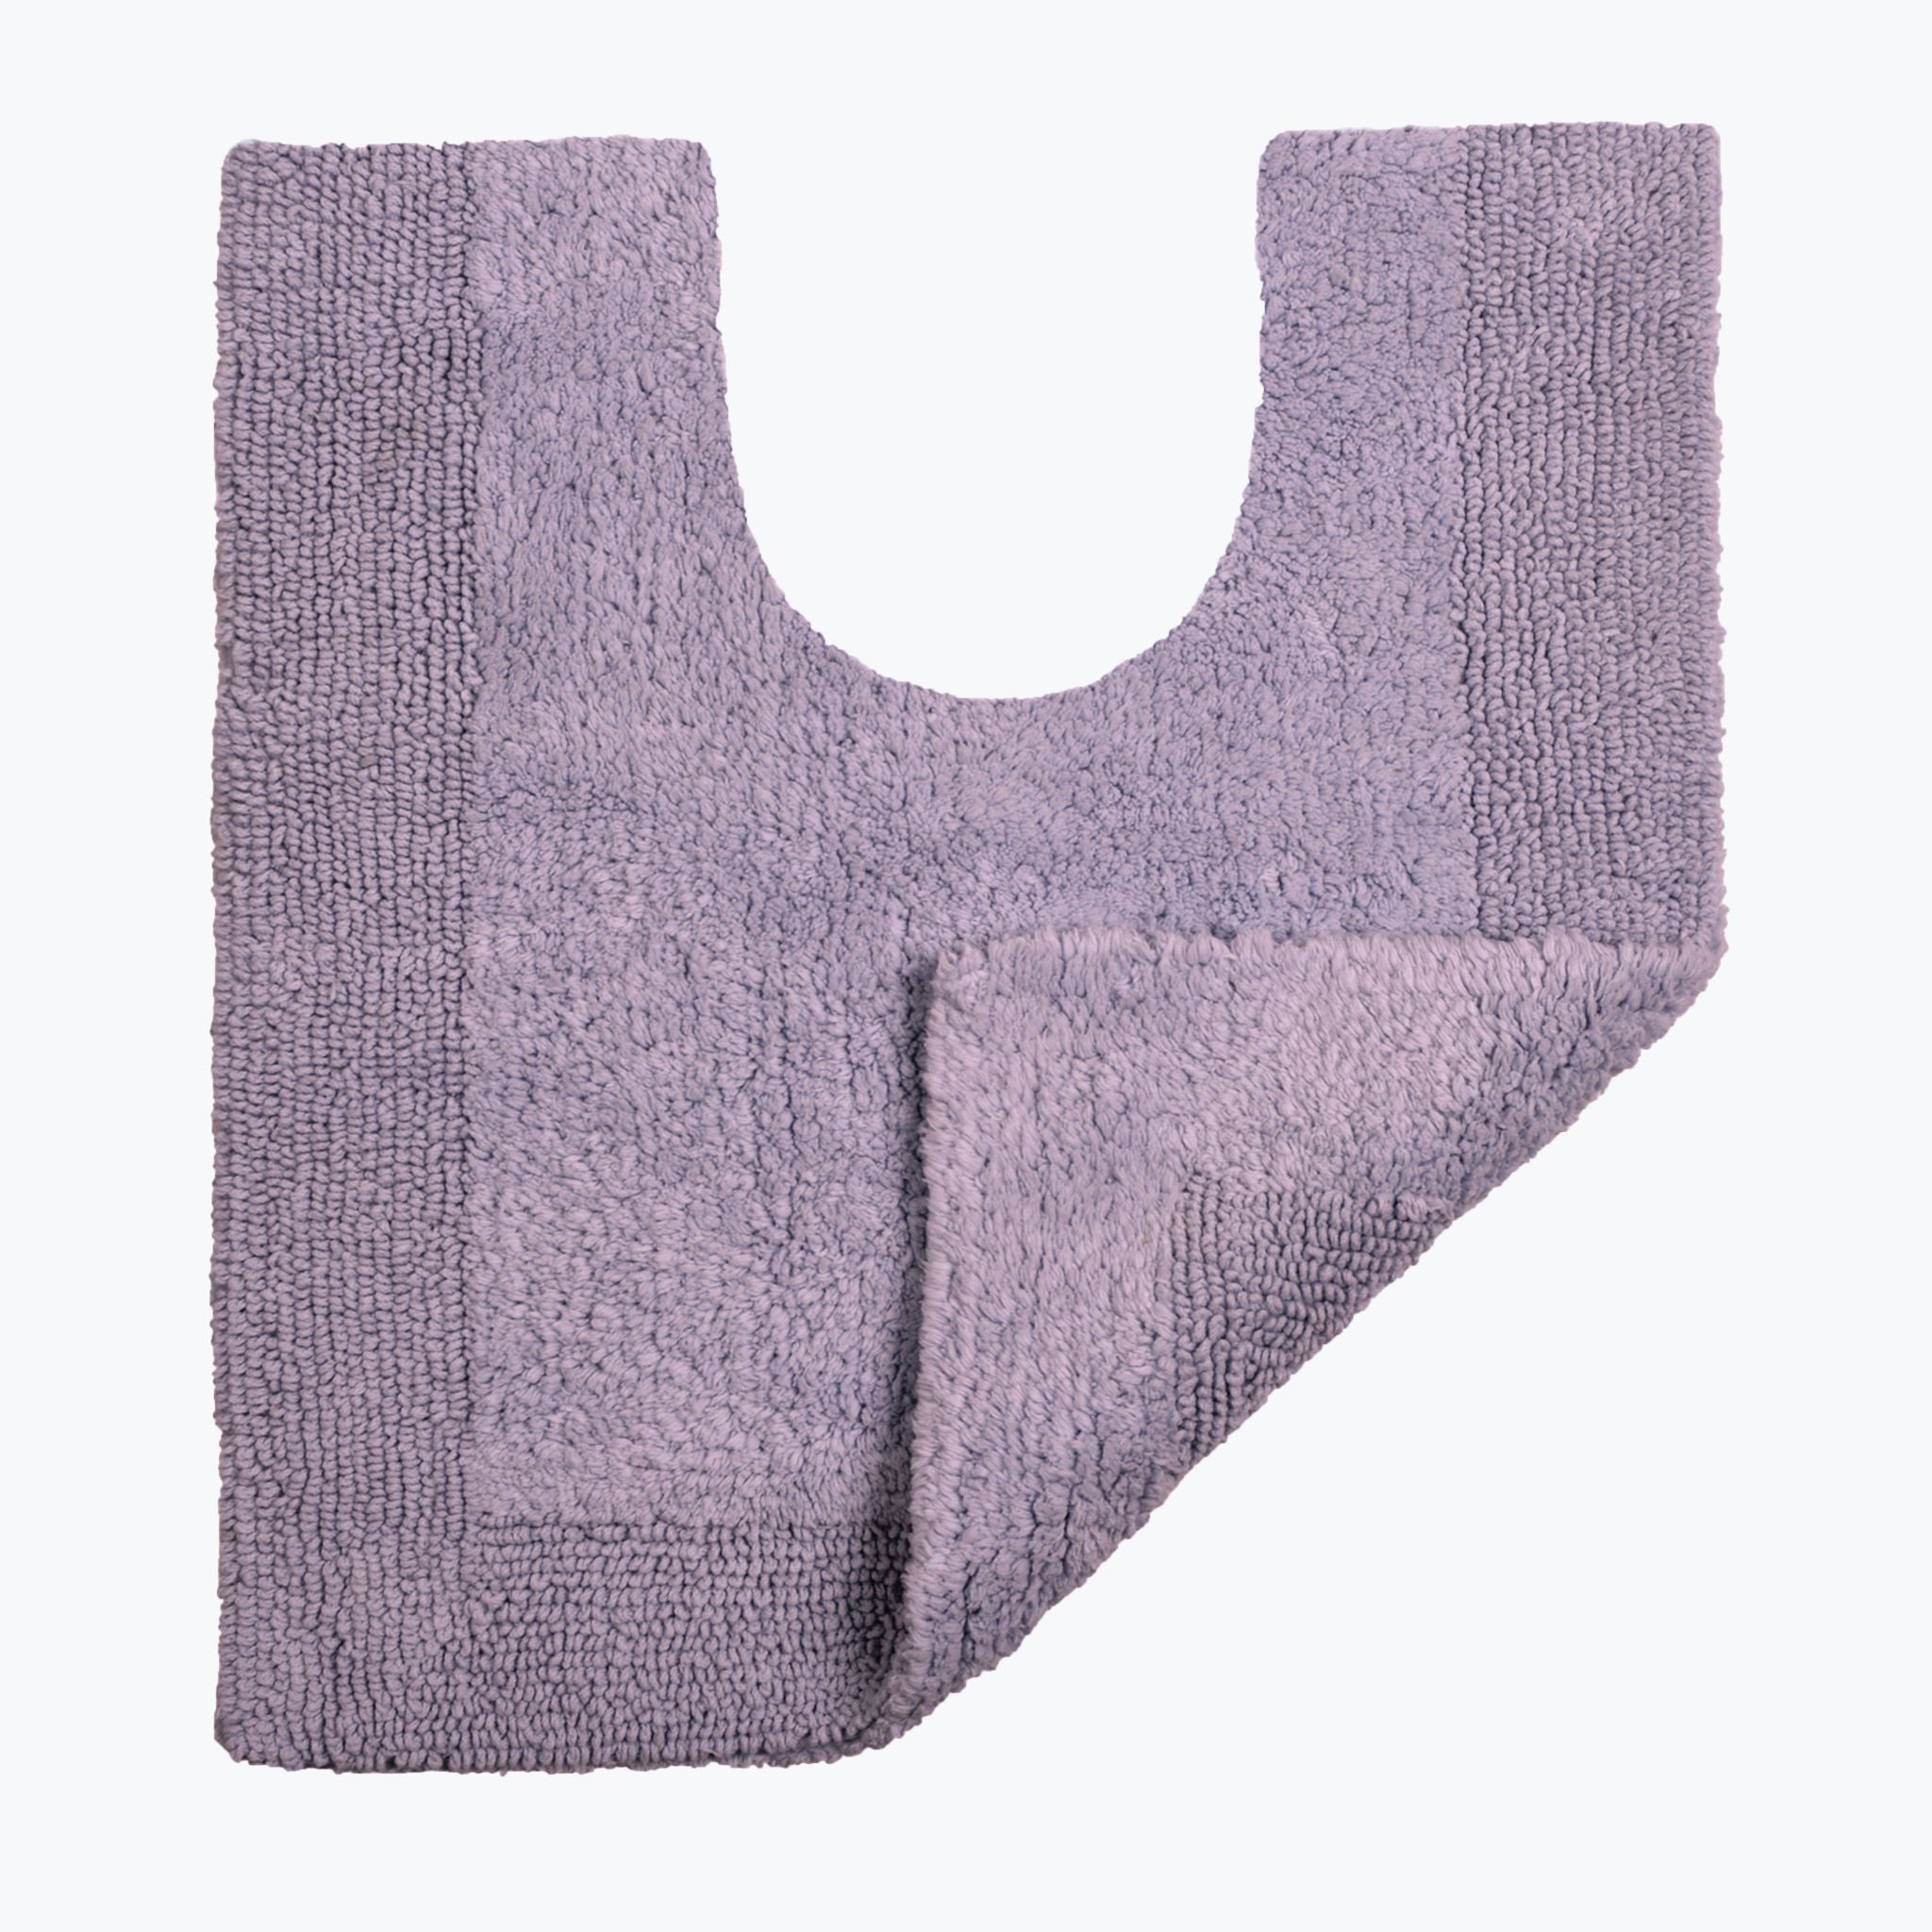 Heather Lilac Reversible Toilet Mat - Super Soft Cotton Pedestal Mat